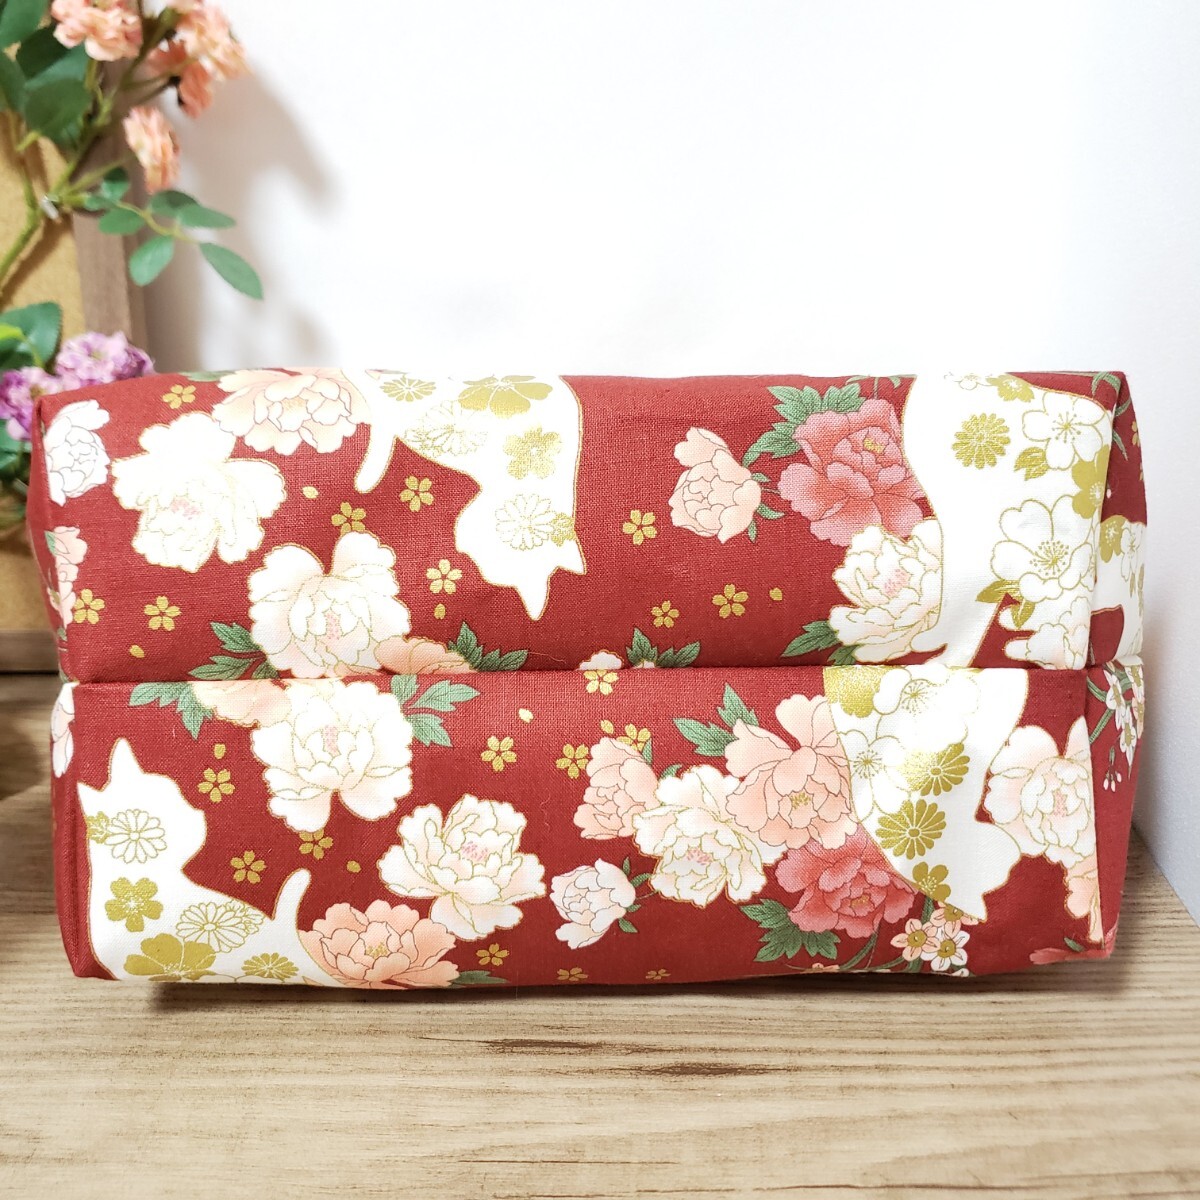 新商品 日本製22cm口金 長財布が入る 白猫 シルエット 猫 花柄 赤 大きい がまぐち 2way がま口 ショルダー バッグ ハンドメイド 着物 和服